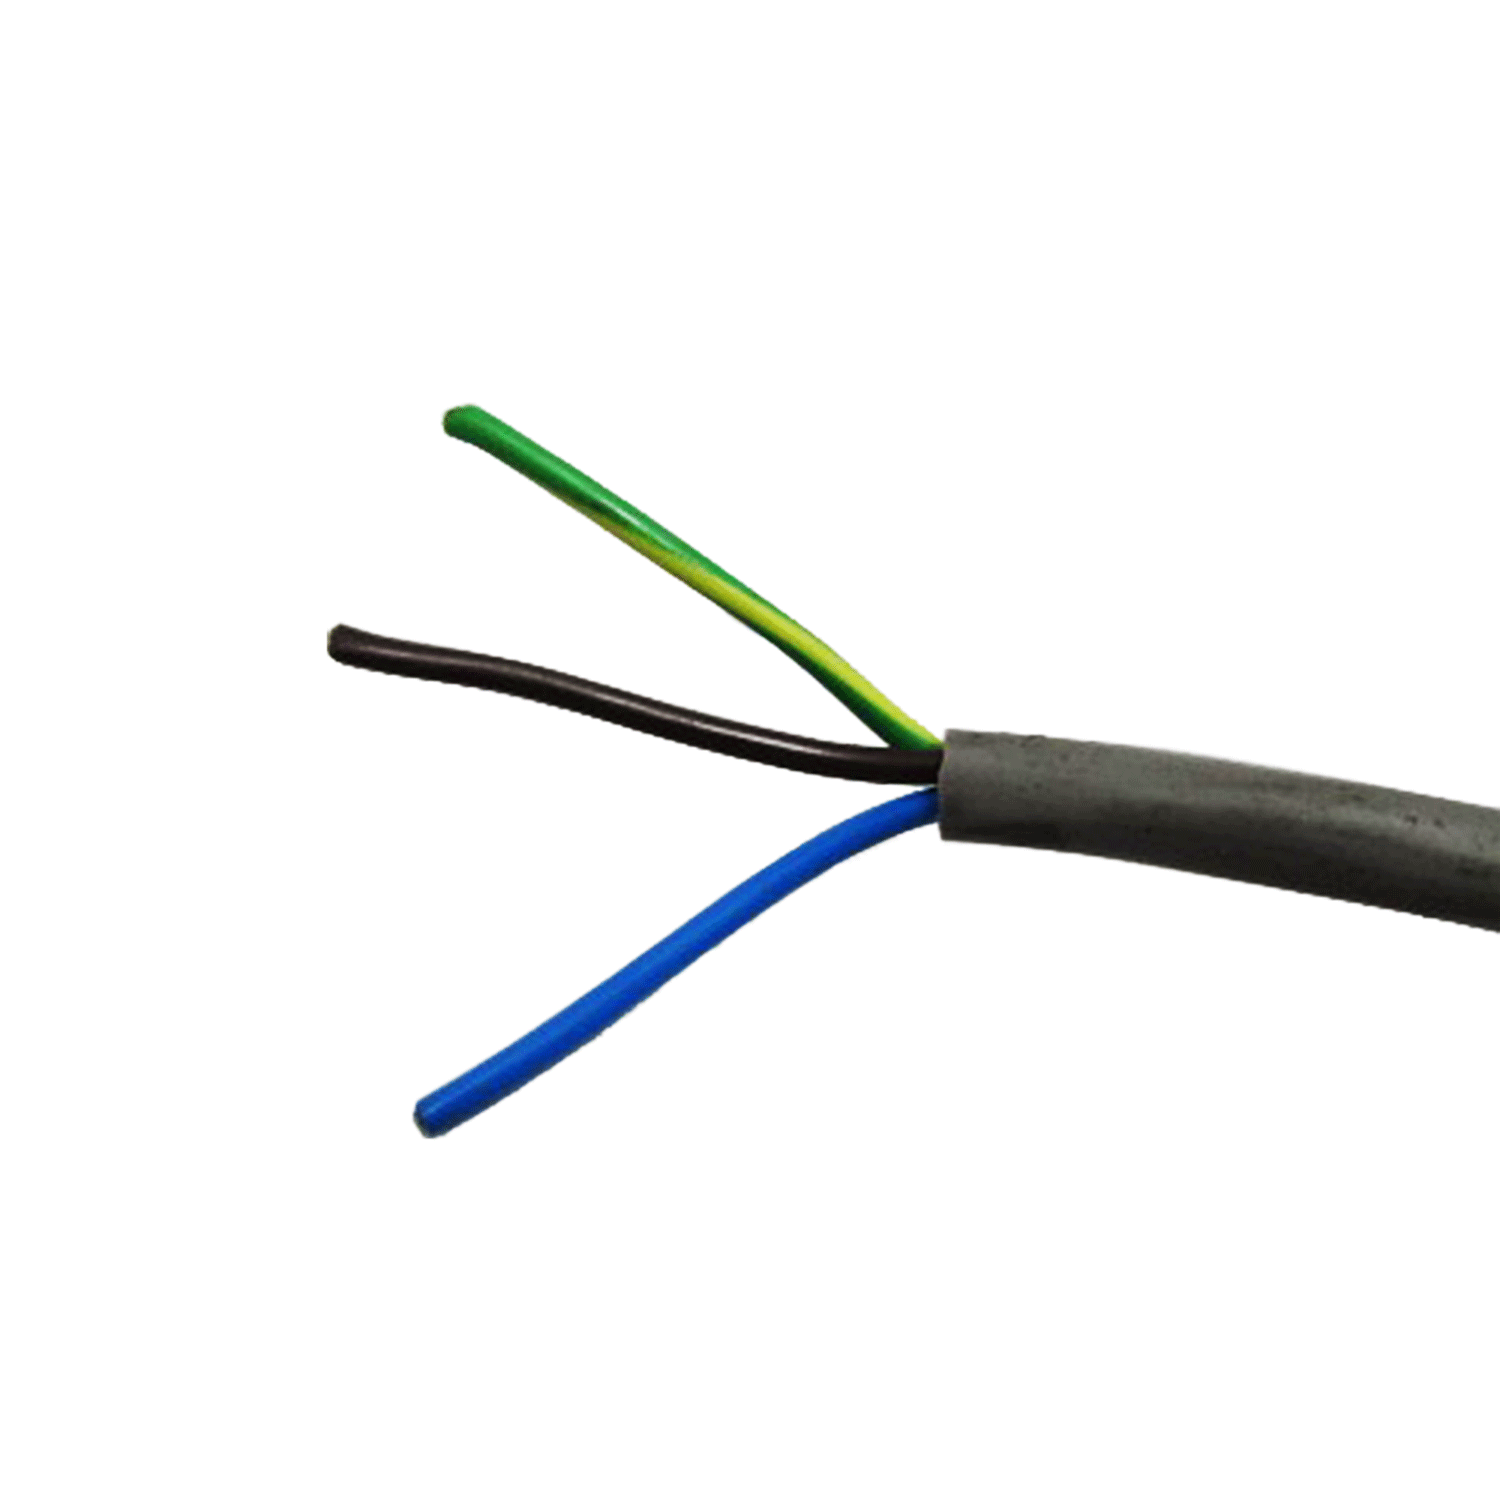 Cable de control 2 conductores, calibre 18, blindado – Todo de Redes